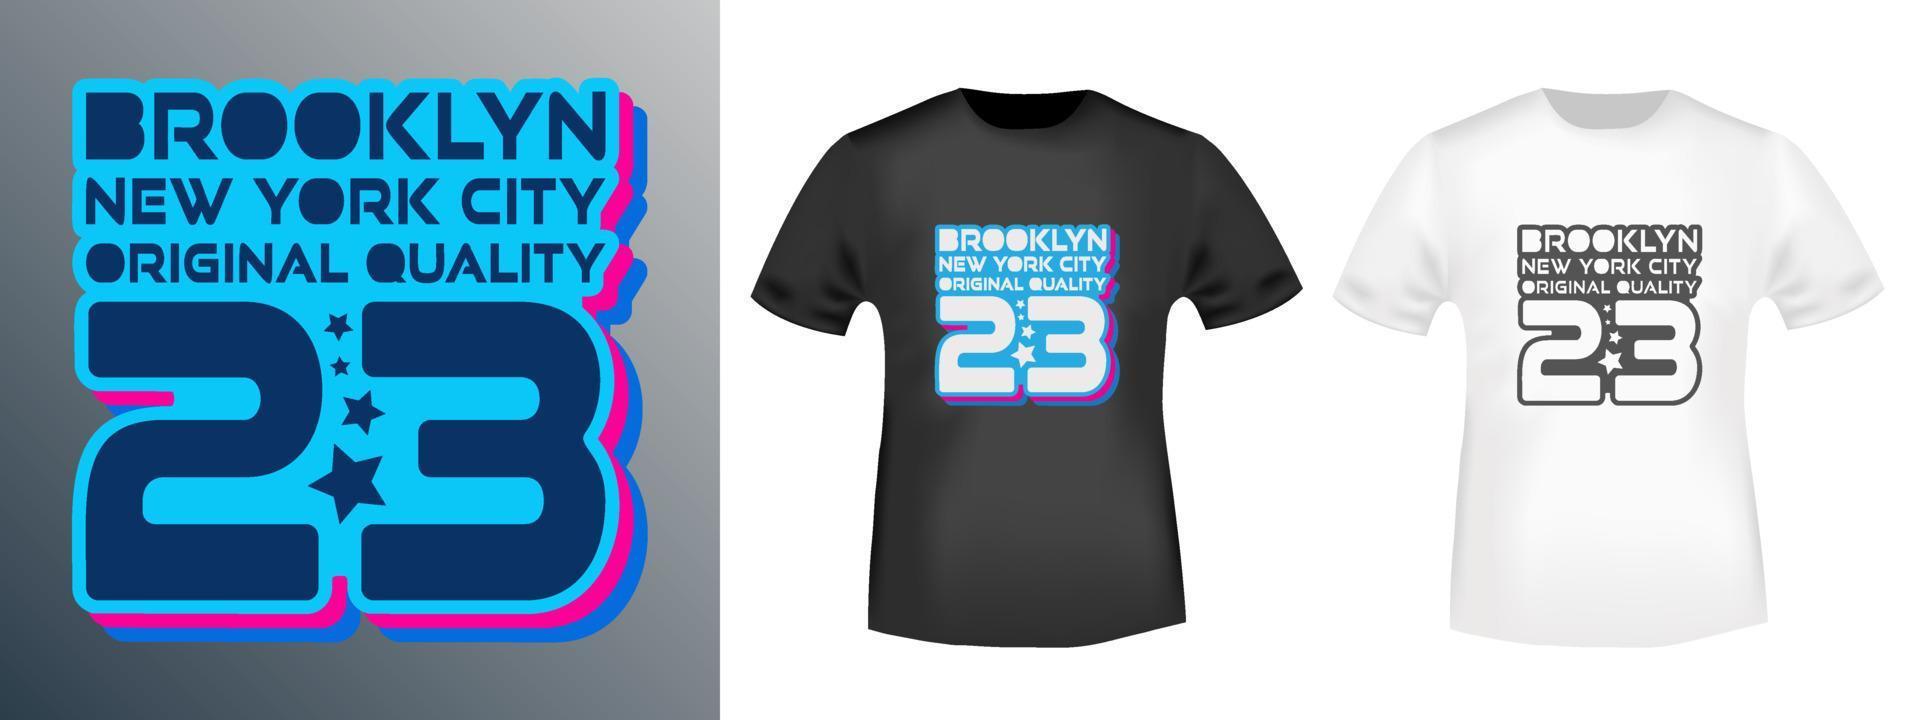 Brooklyn New York Design für T-Shirt-Briefmarken, T-Shirt-Druck, Applikationen, Abzeichen, Label-Freizeitkleidung oder andere Druckprodukte. Vektor-Illustration. vektor